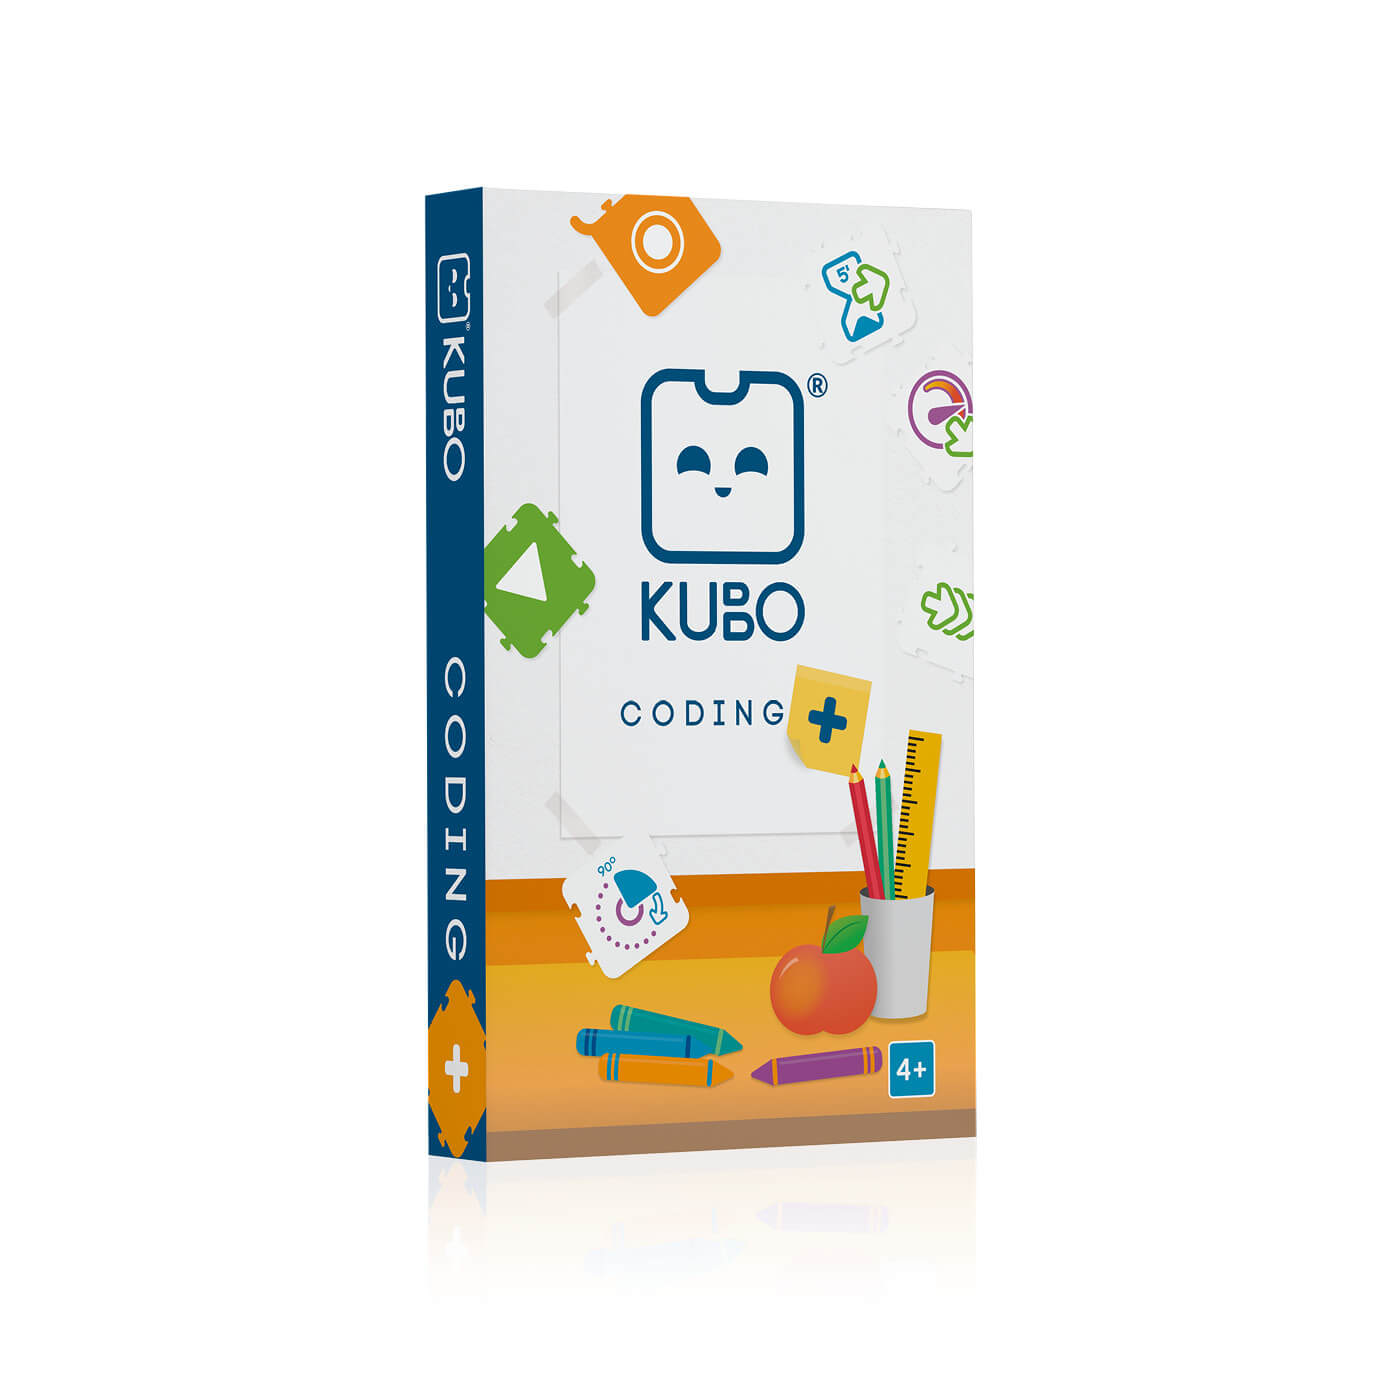 KUBO_Coding-web-product-